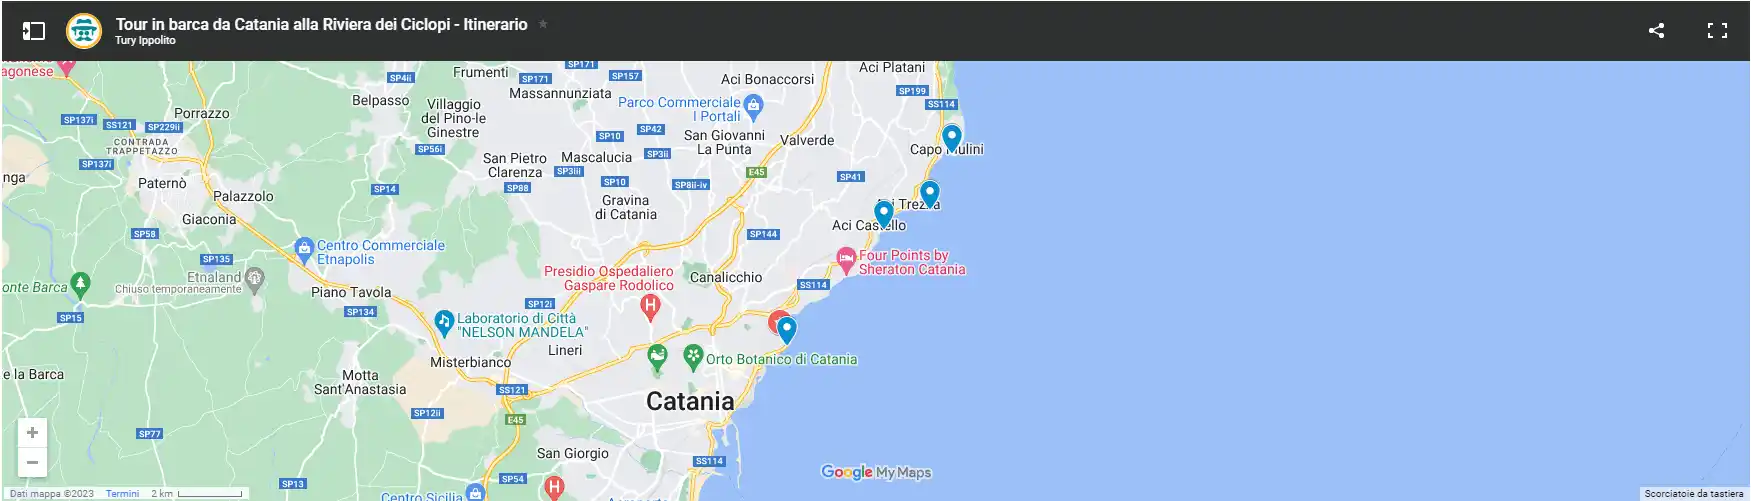 mappa itinerario giro in barca da Catania